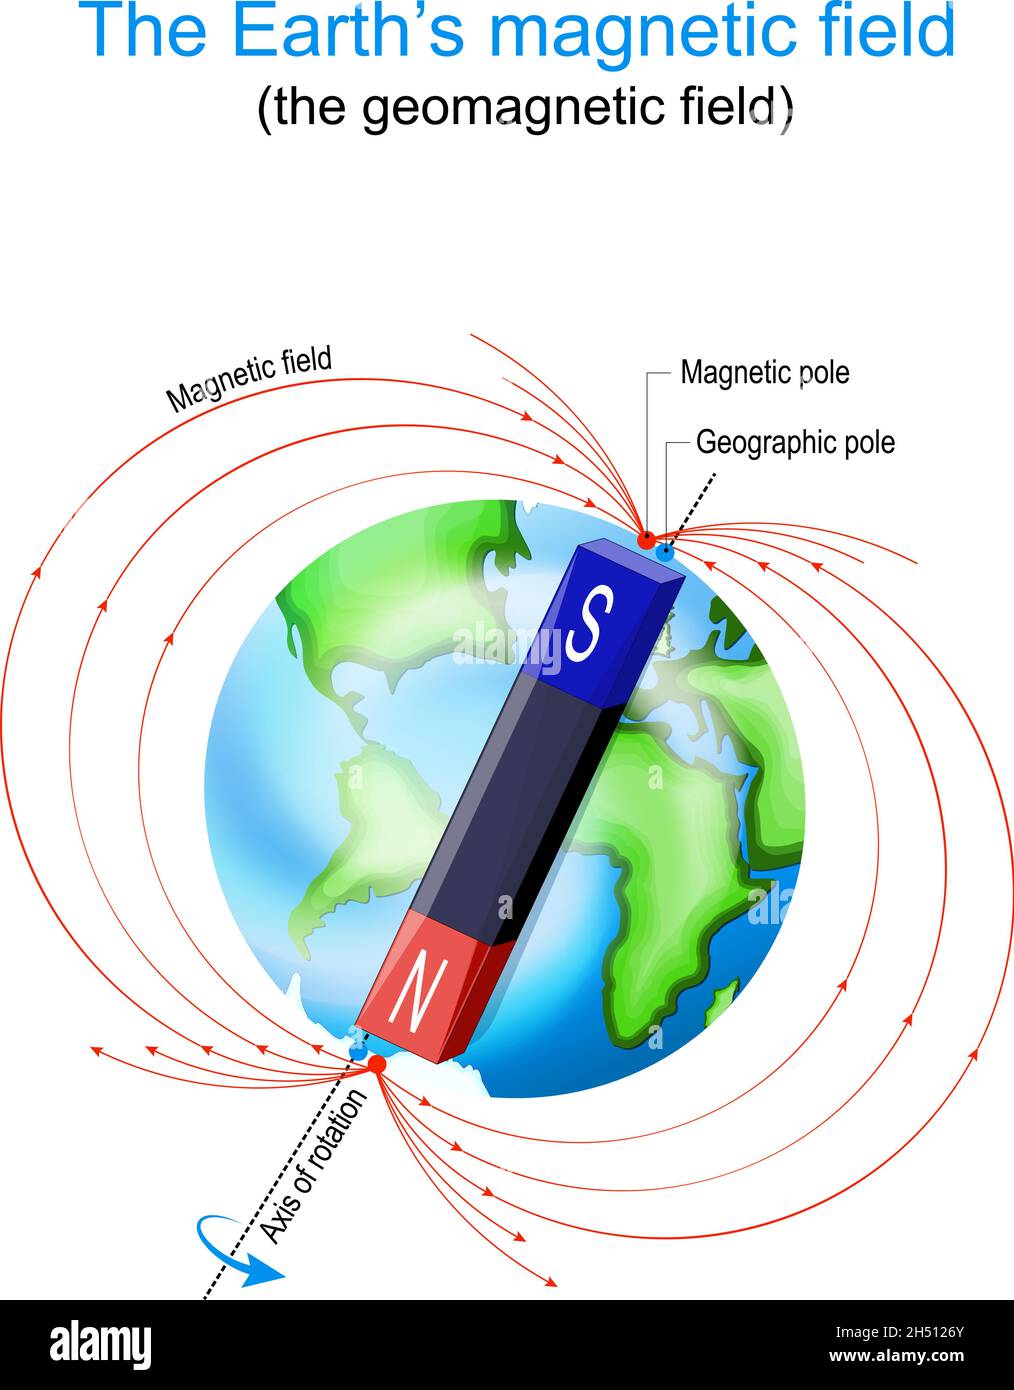 Champ magnétique terrestre.Planète Terre avec pôles magnétiques, géographiques et géomagnétiques.Diagramme vectoriel Illustration de Vecteur